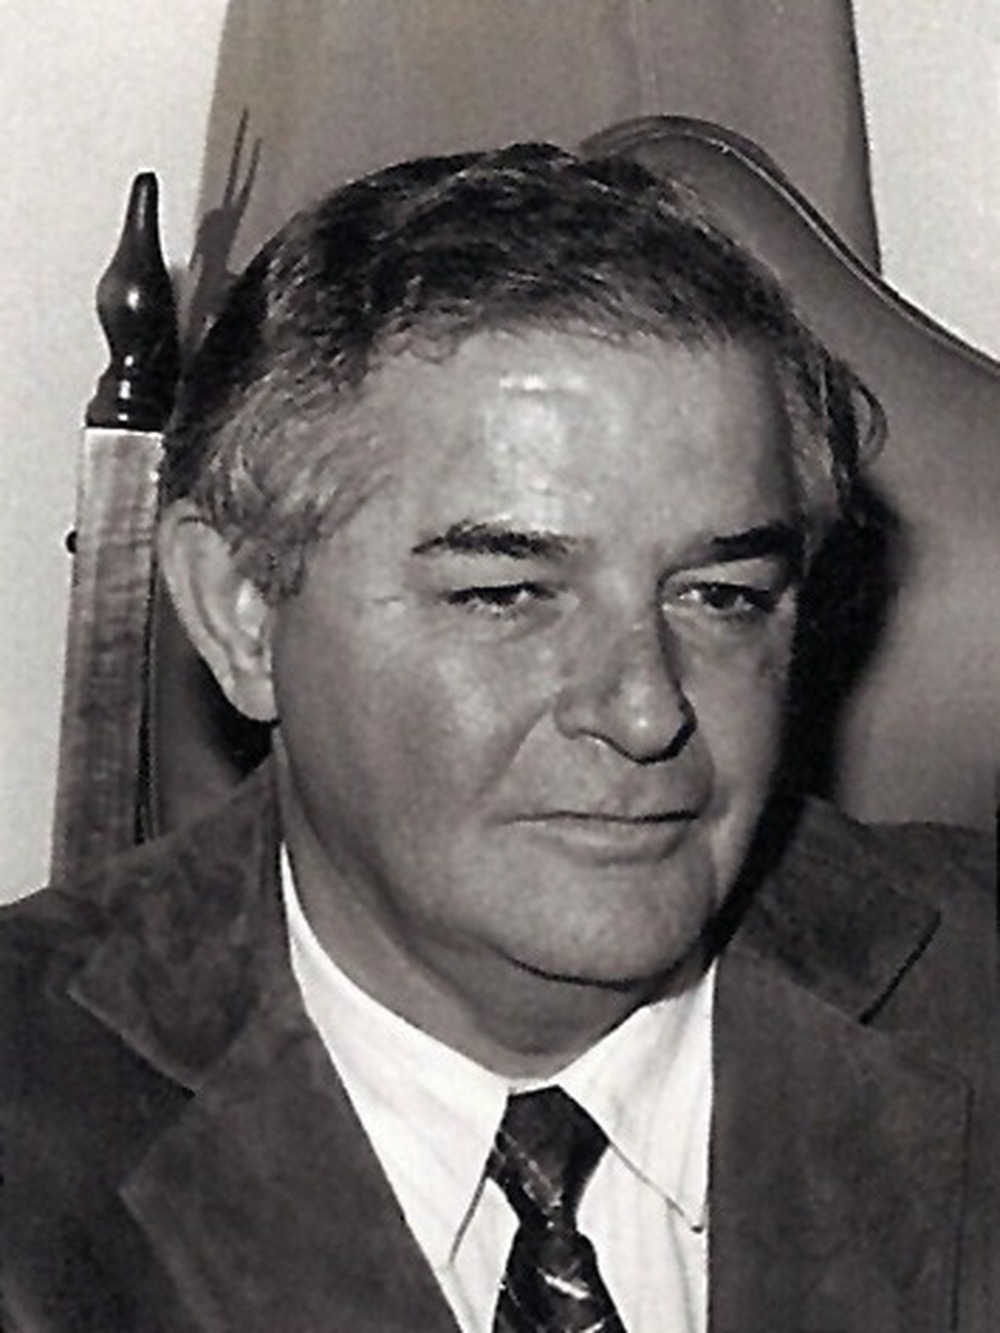 José Maurício Linhares Barreto, secretário de Minas e Energia de Brizola, morre no Rio de Janeiro aos 88 anos